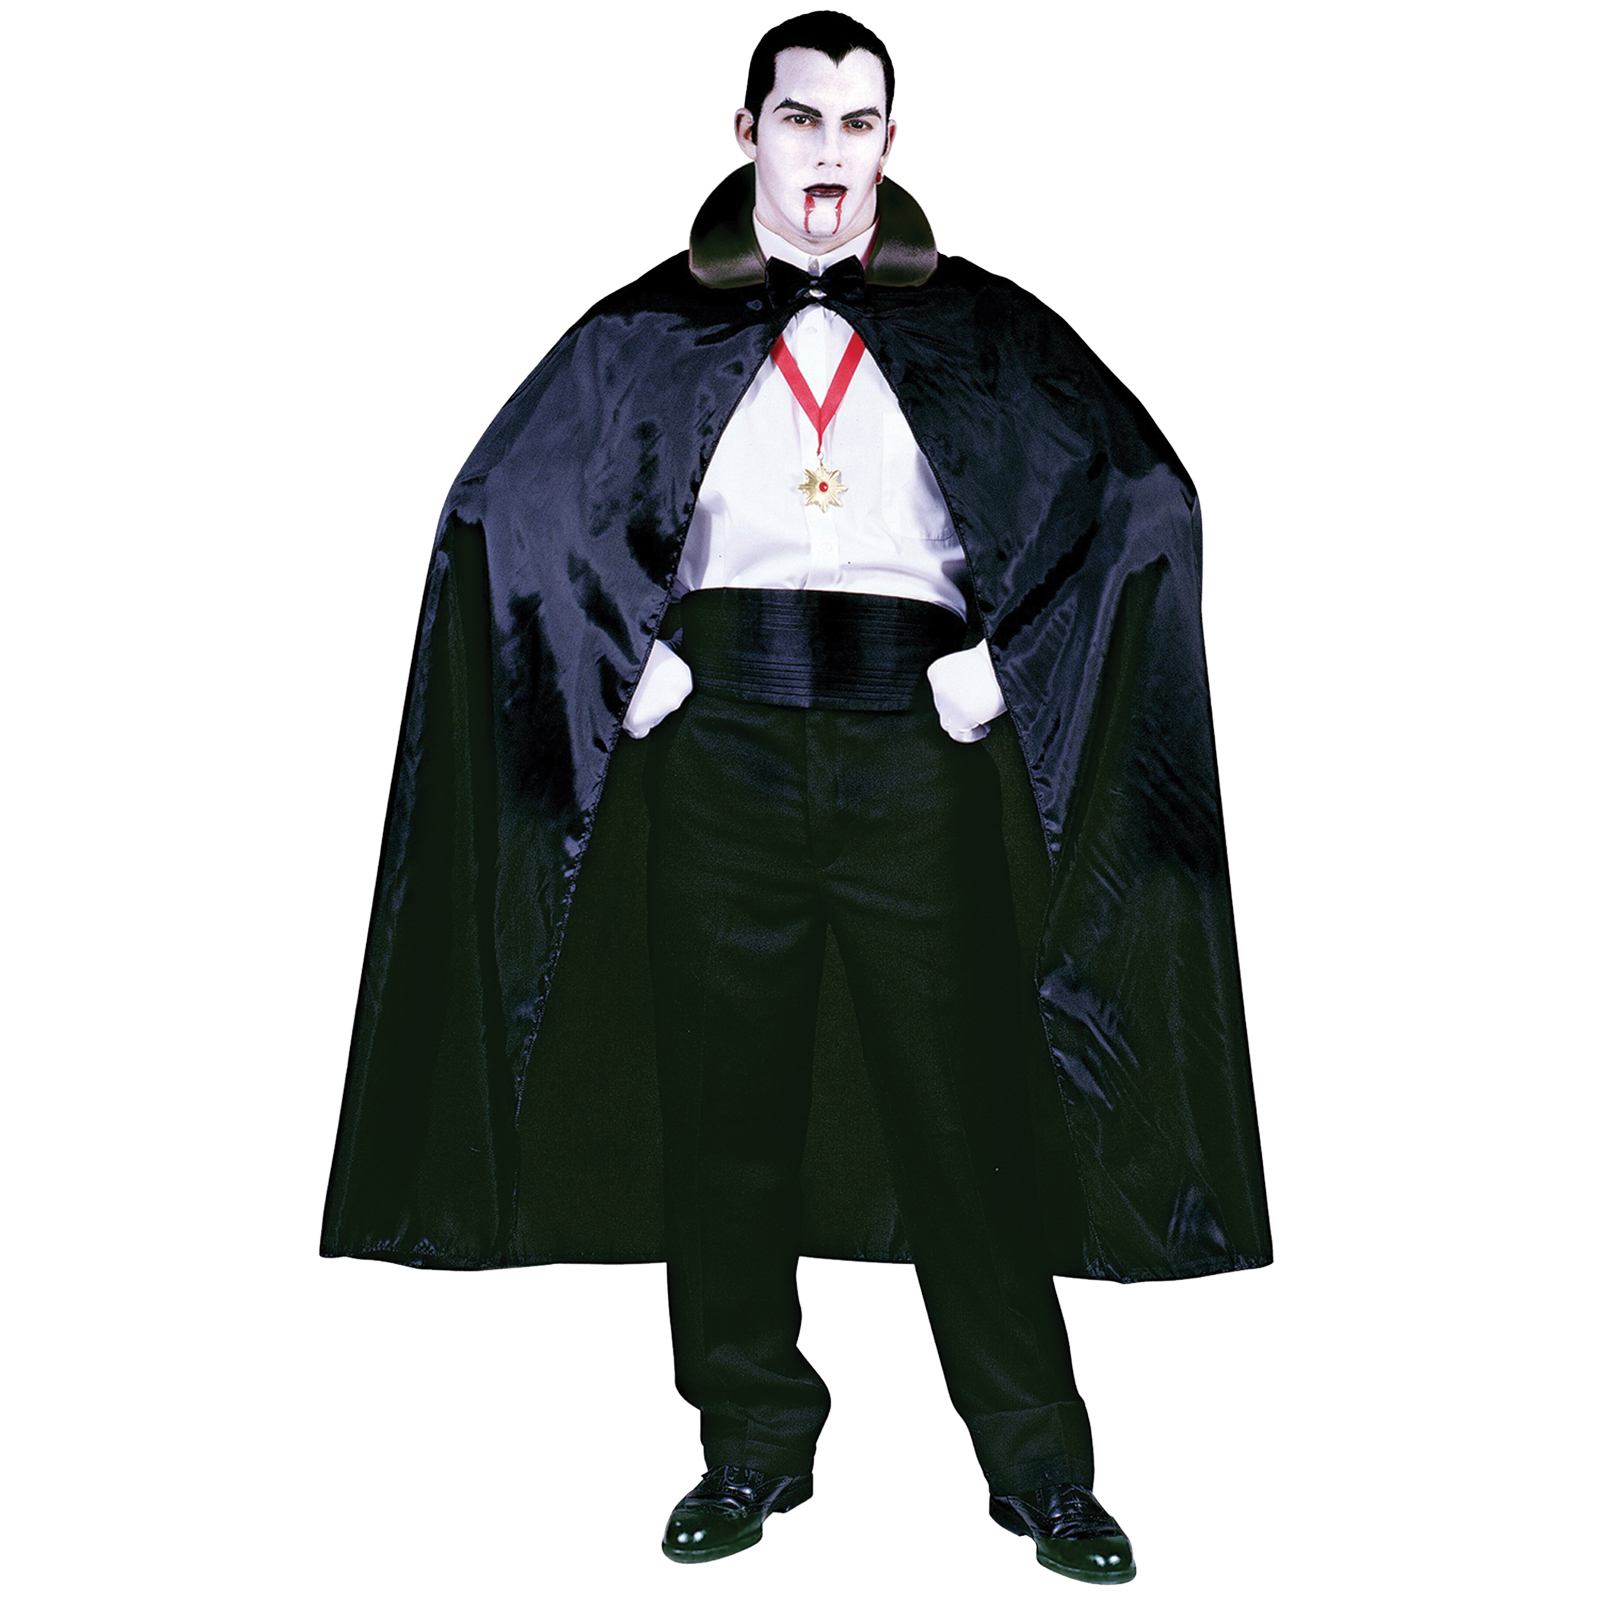 Count Cape 56in Black Costume Accessory